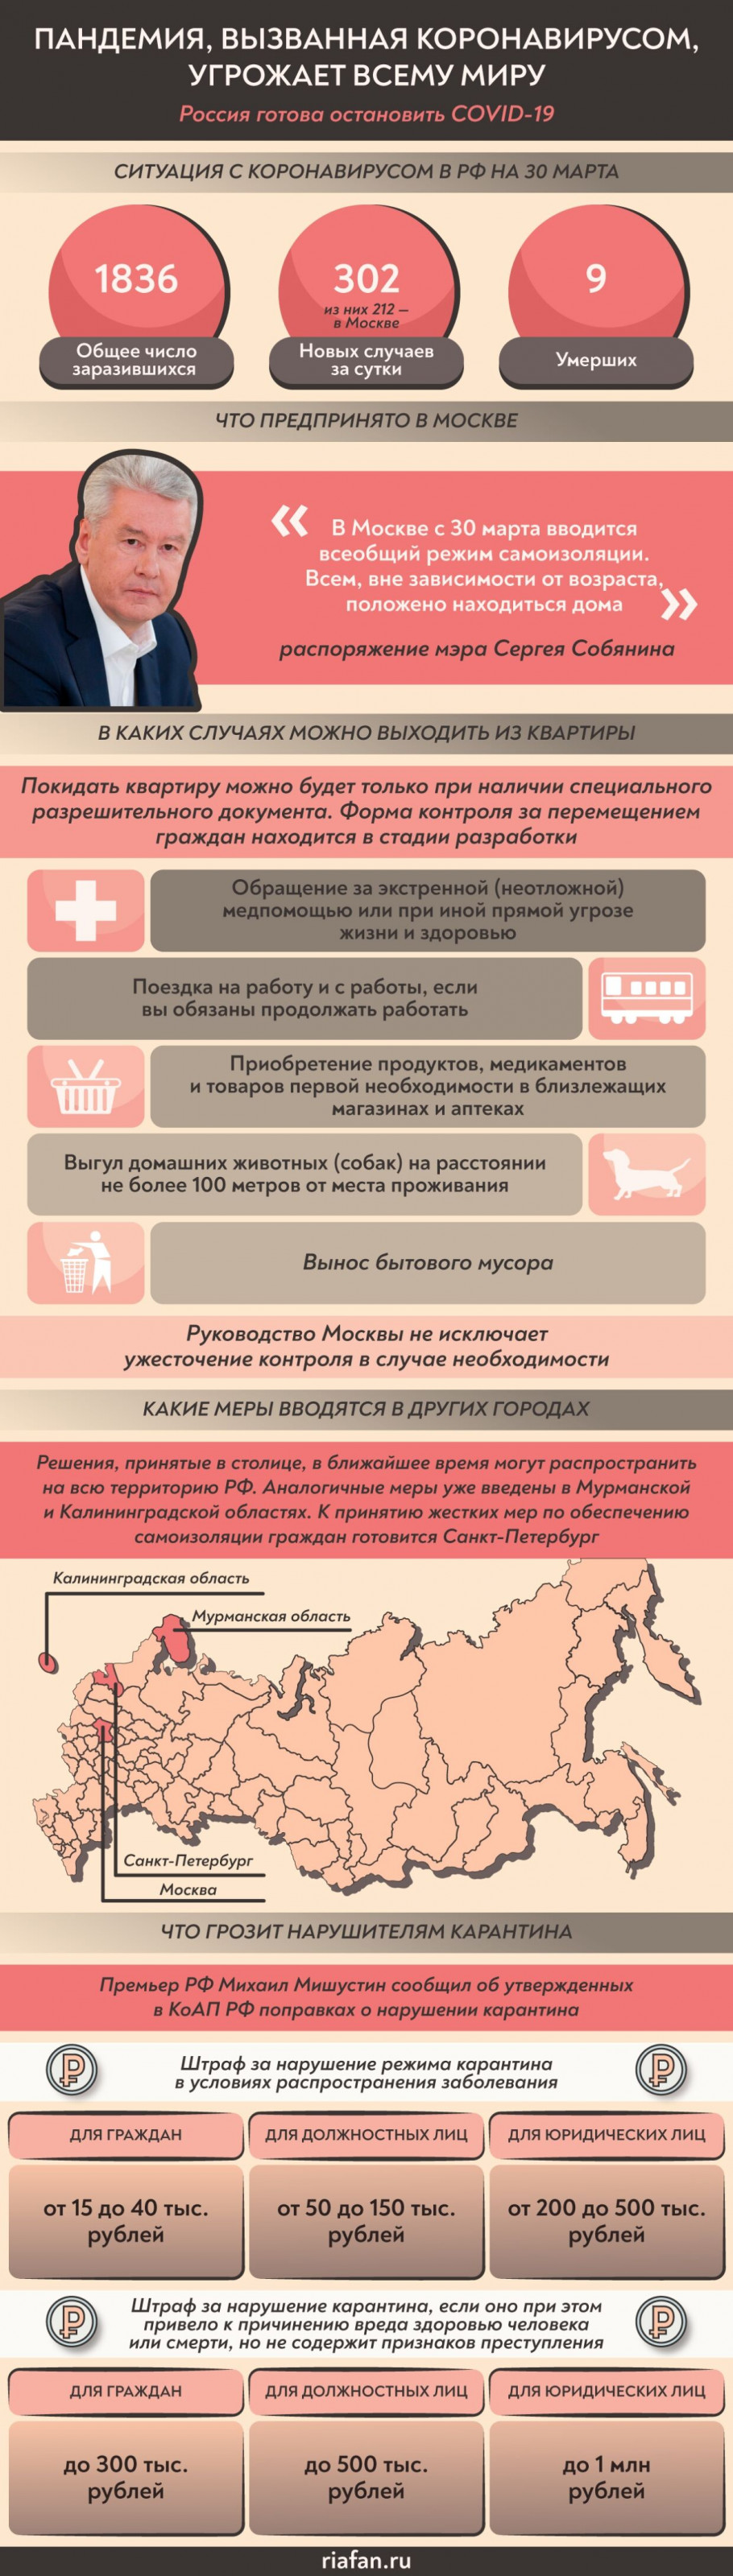 Меры, принятые для пресечения распространения коронавируса в РФ на 30 марта